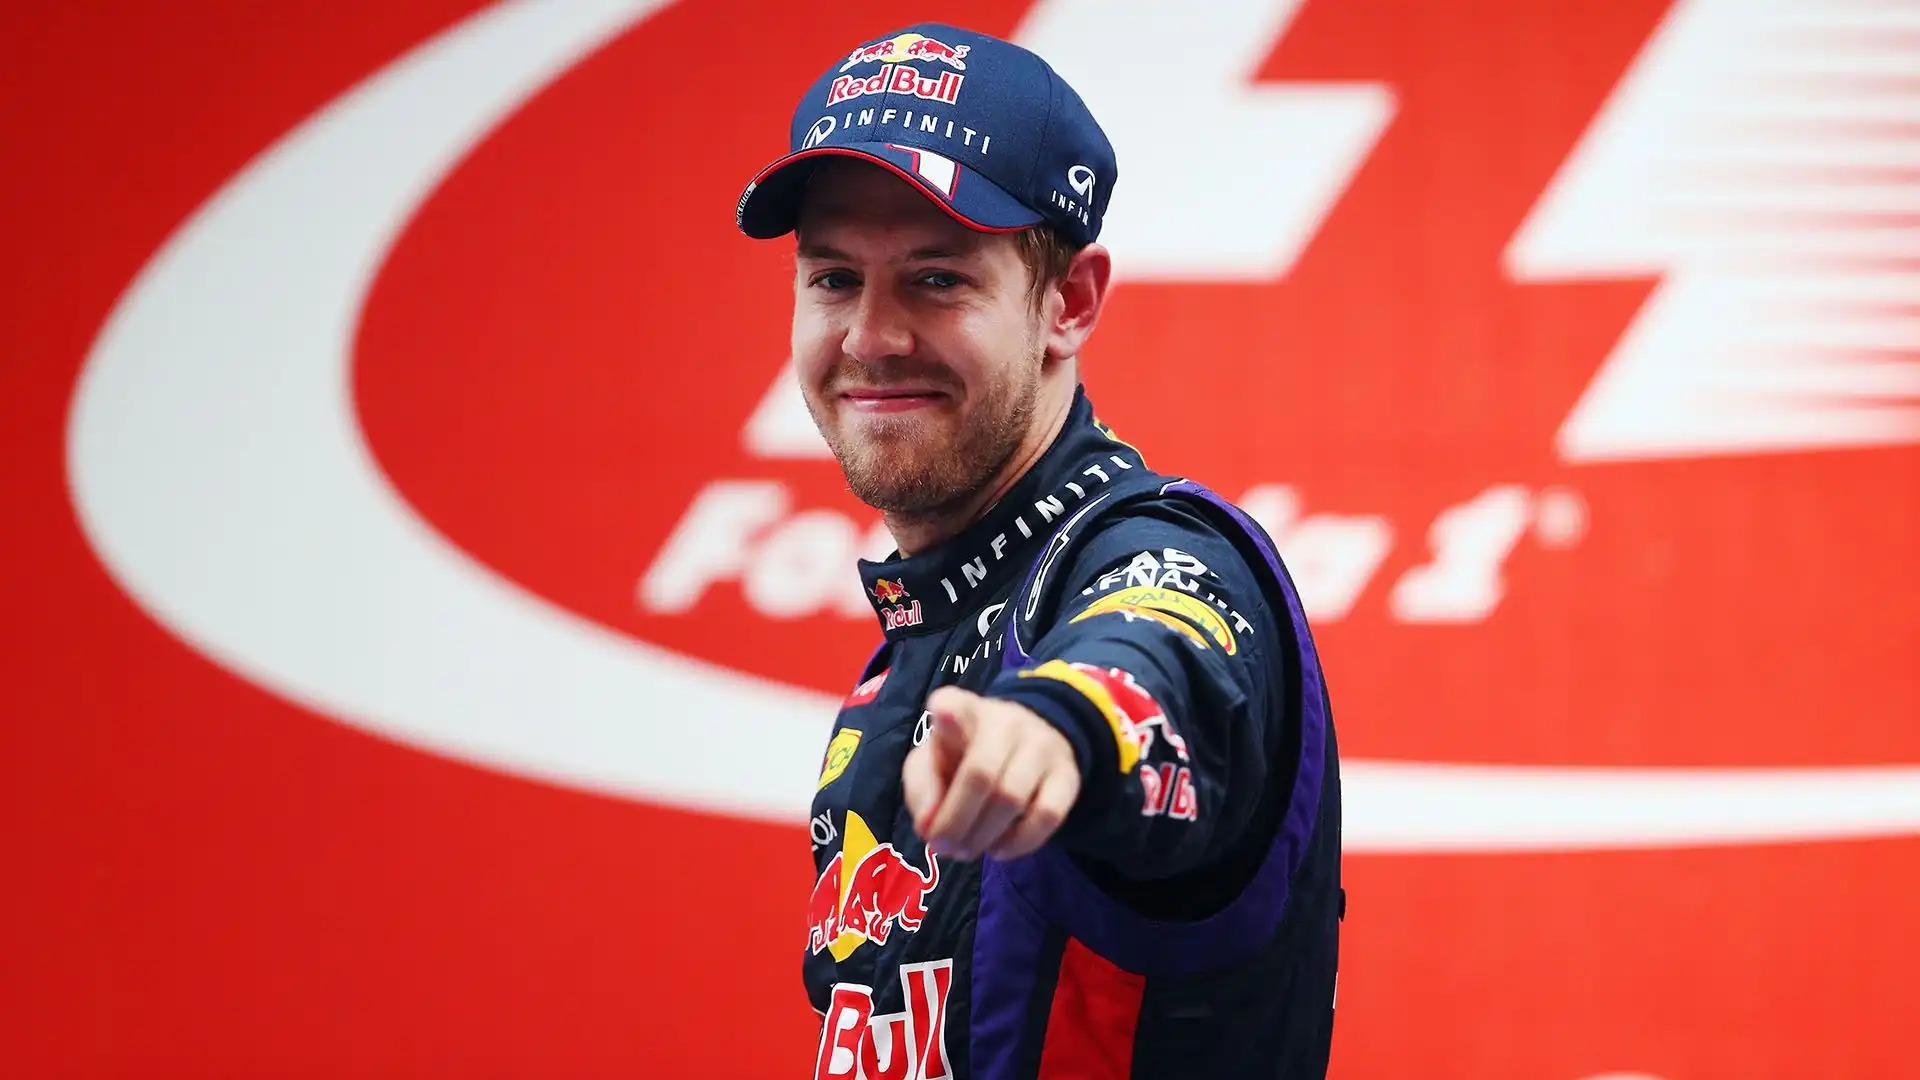 Secondo la Gazzetta dello Sport Vettel avrebbe avuto contatti in passato con il team di Brackley